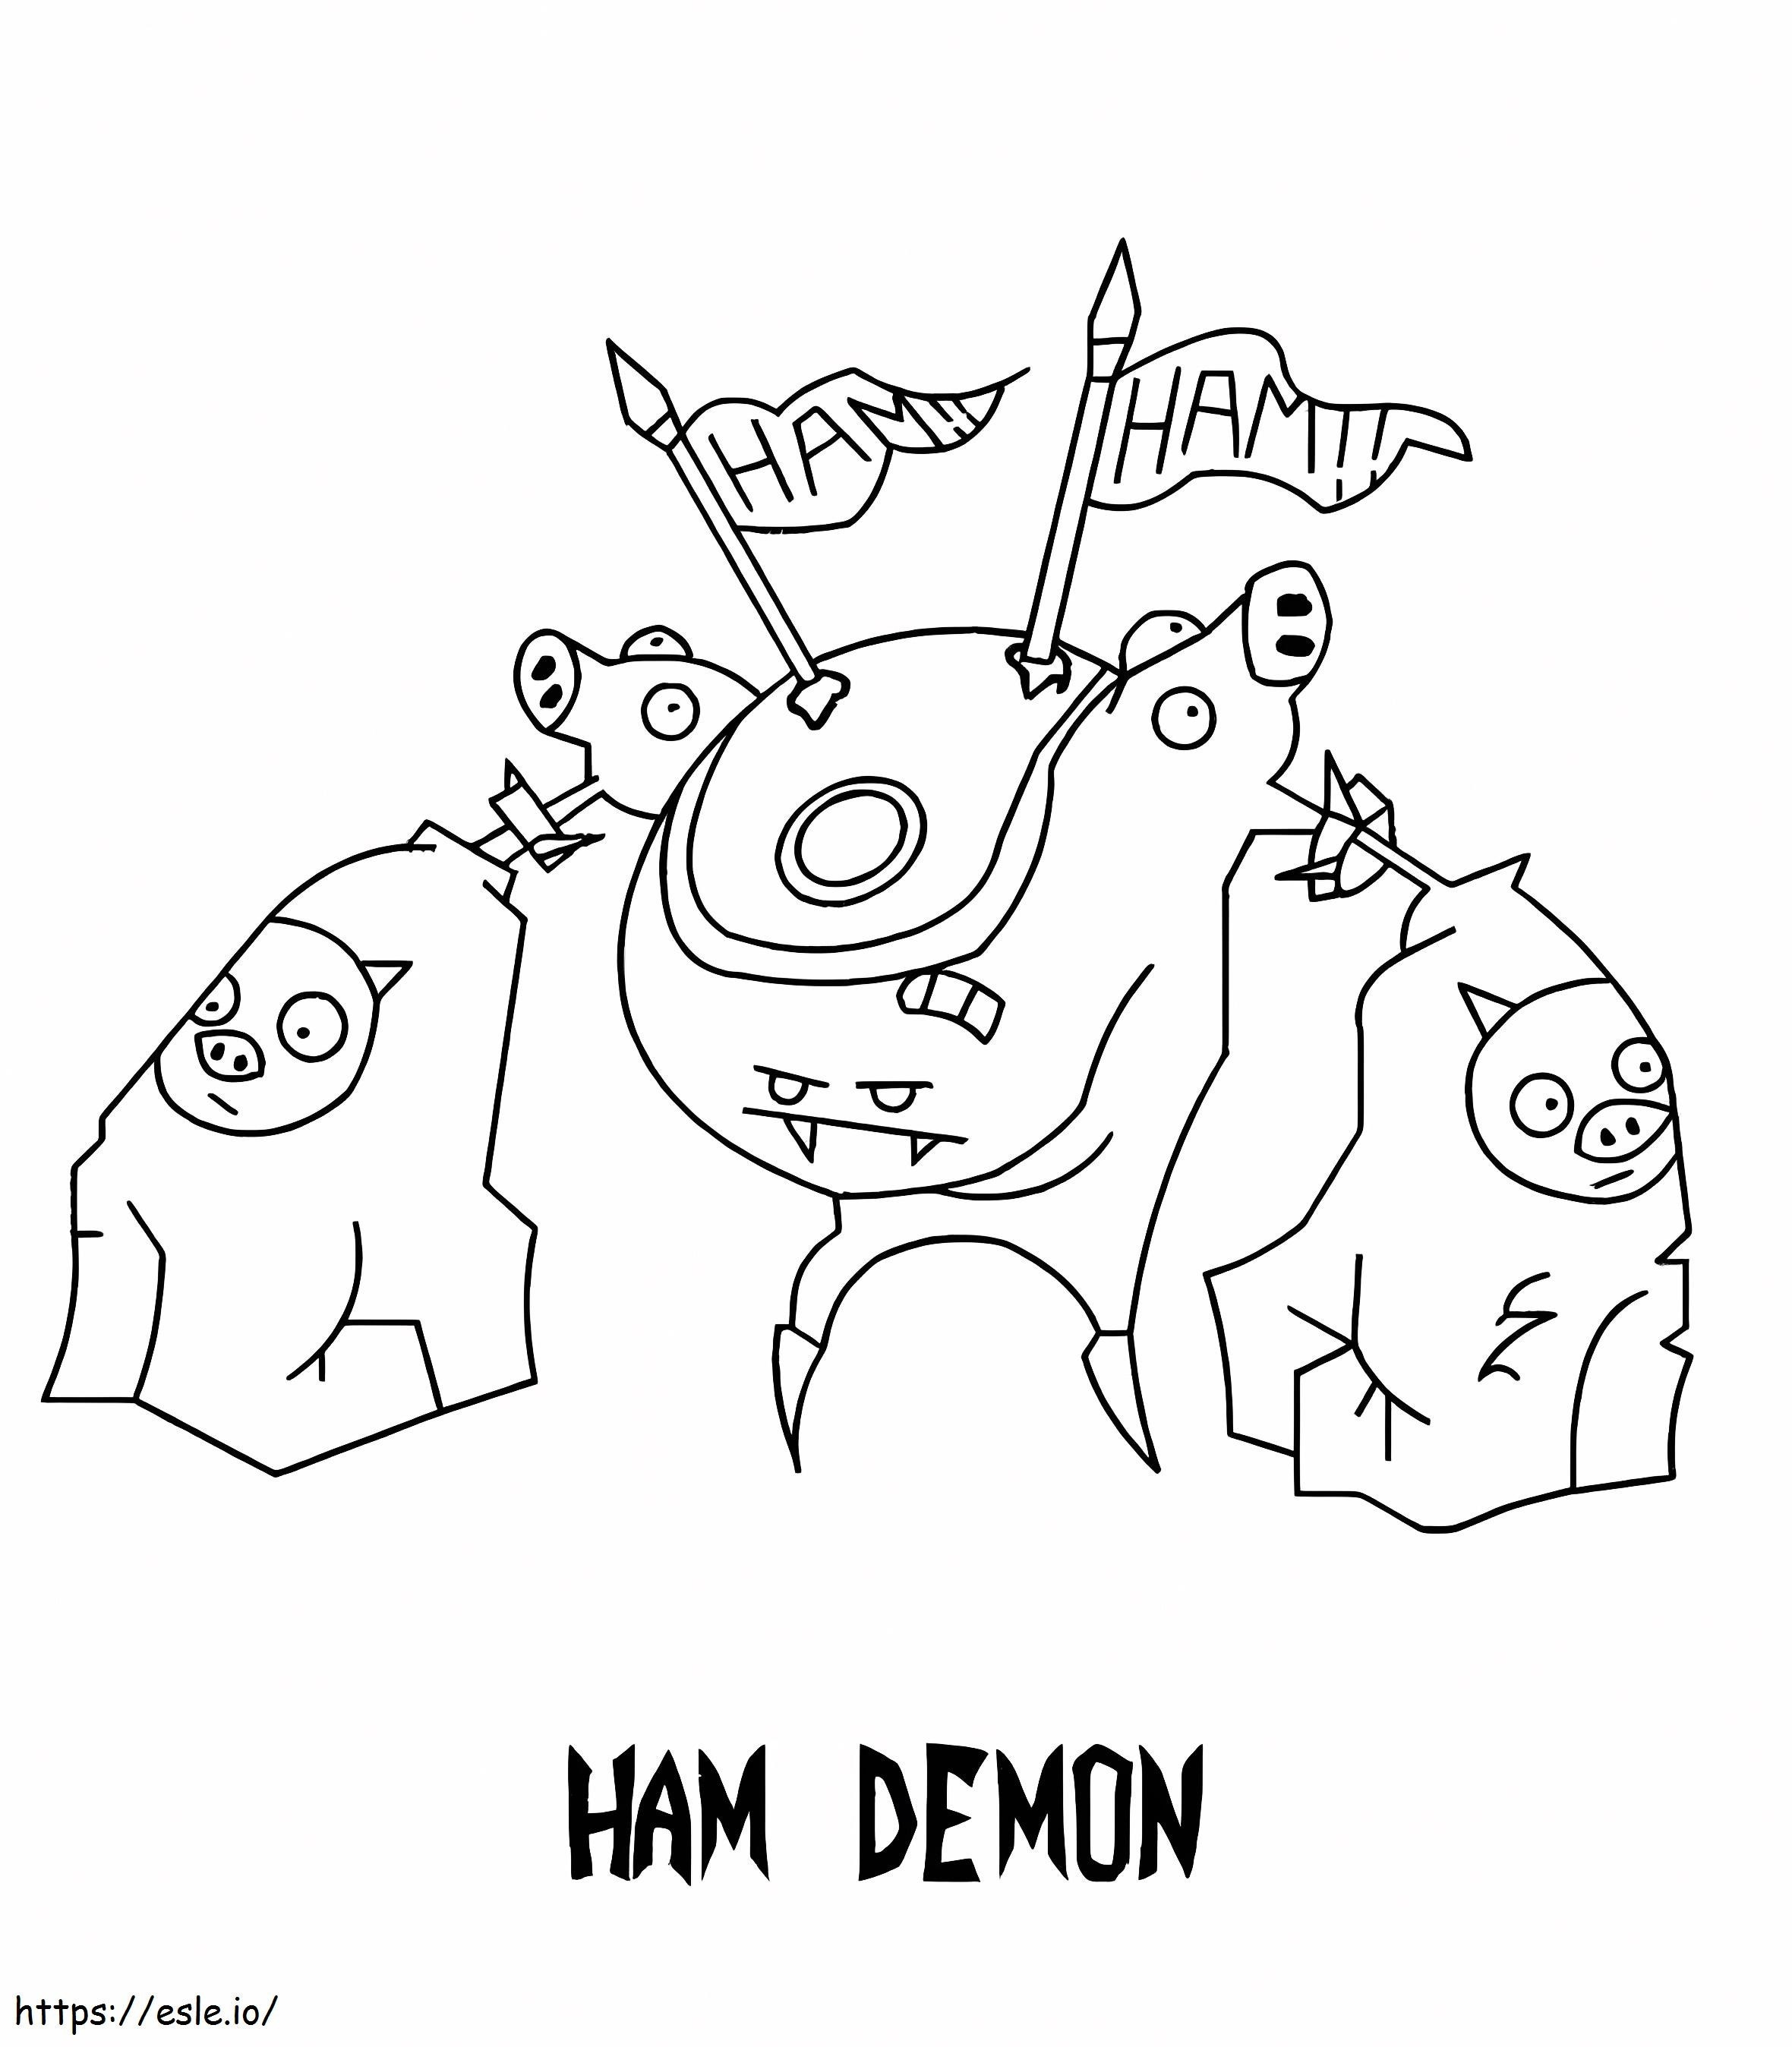 Ham-demon van indringer Zim kleurplaat kleurplaat